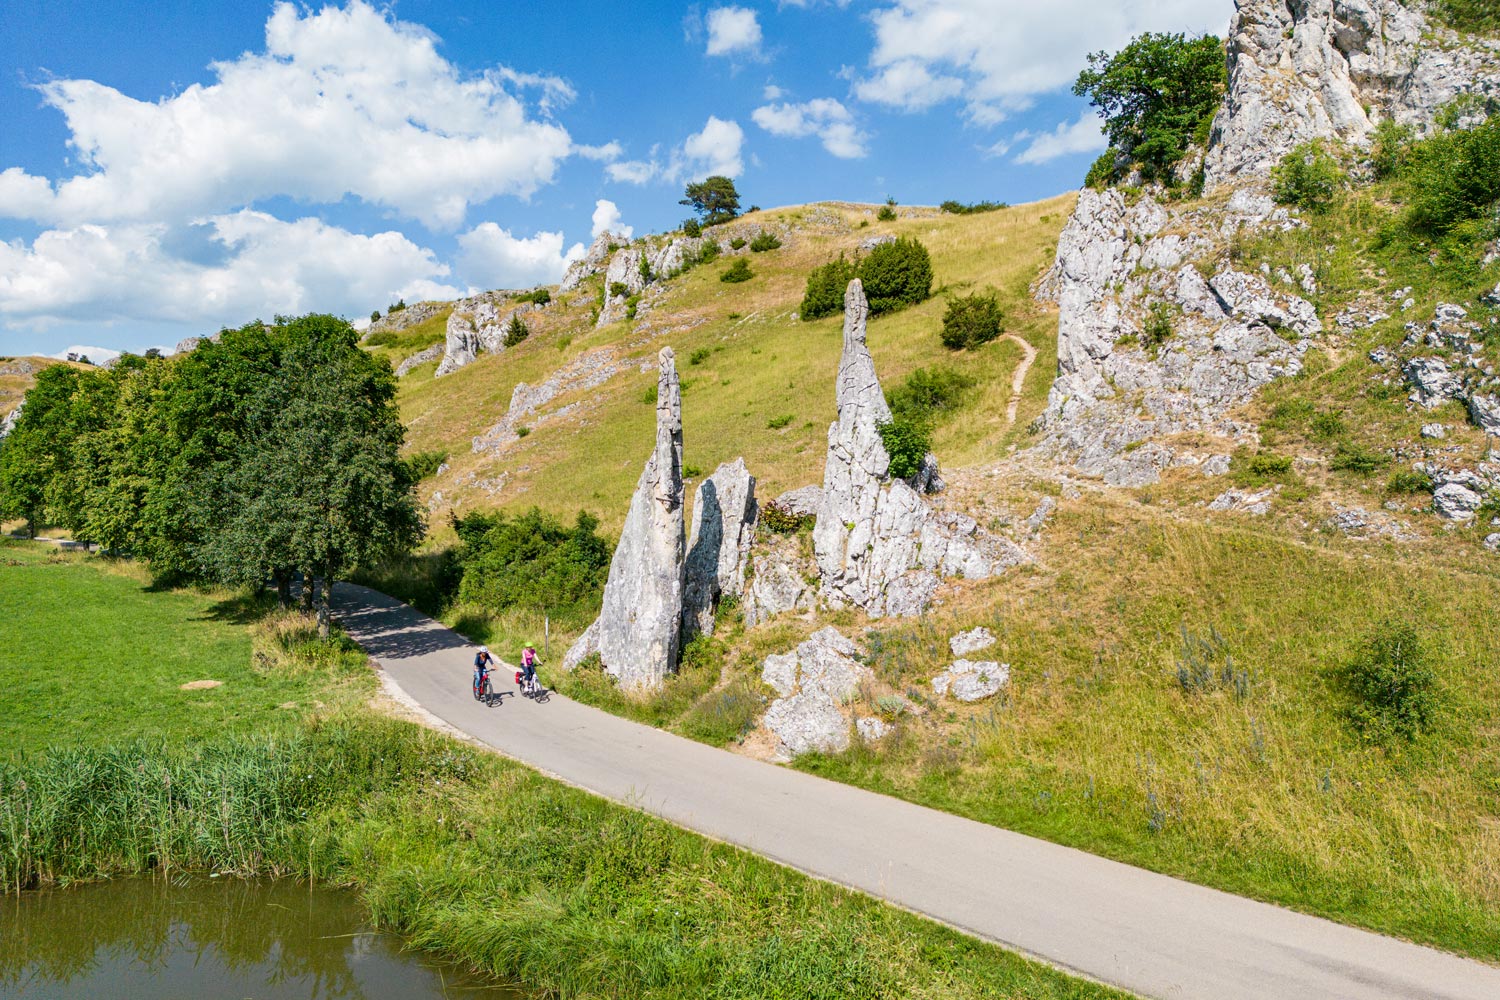 Mit dem Fahrrad lässt sich das Eselsburger Tal mit den Steinernen Jungfrauen und spektakulären Felsformationen erkunden.